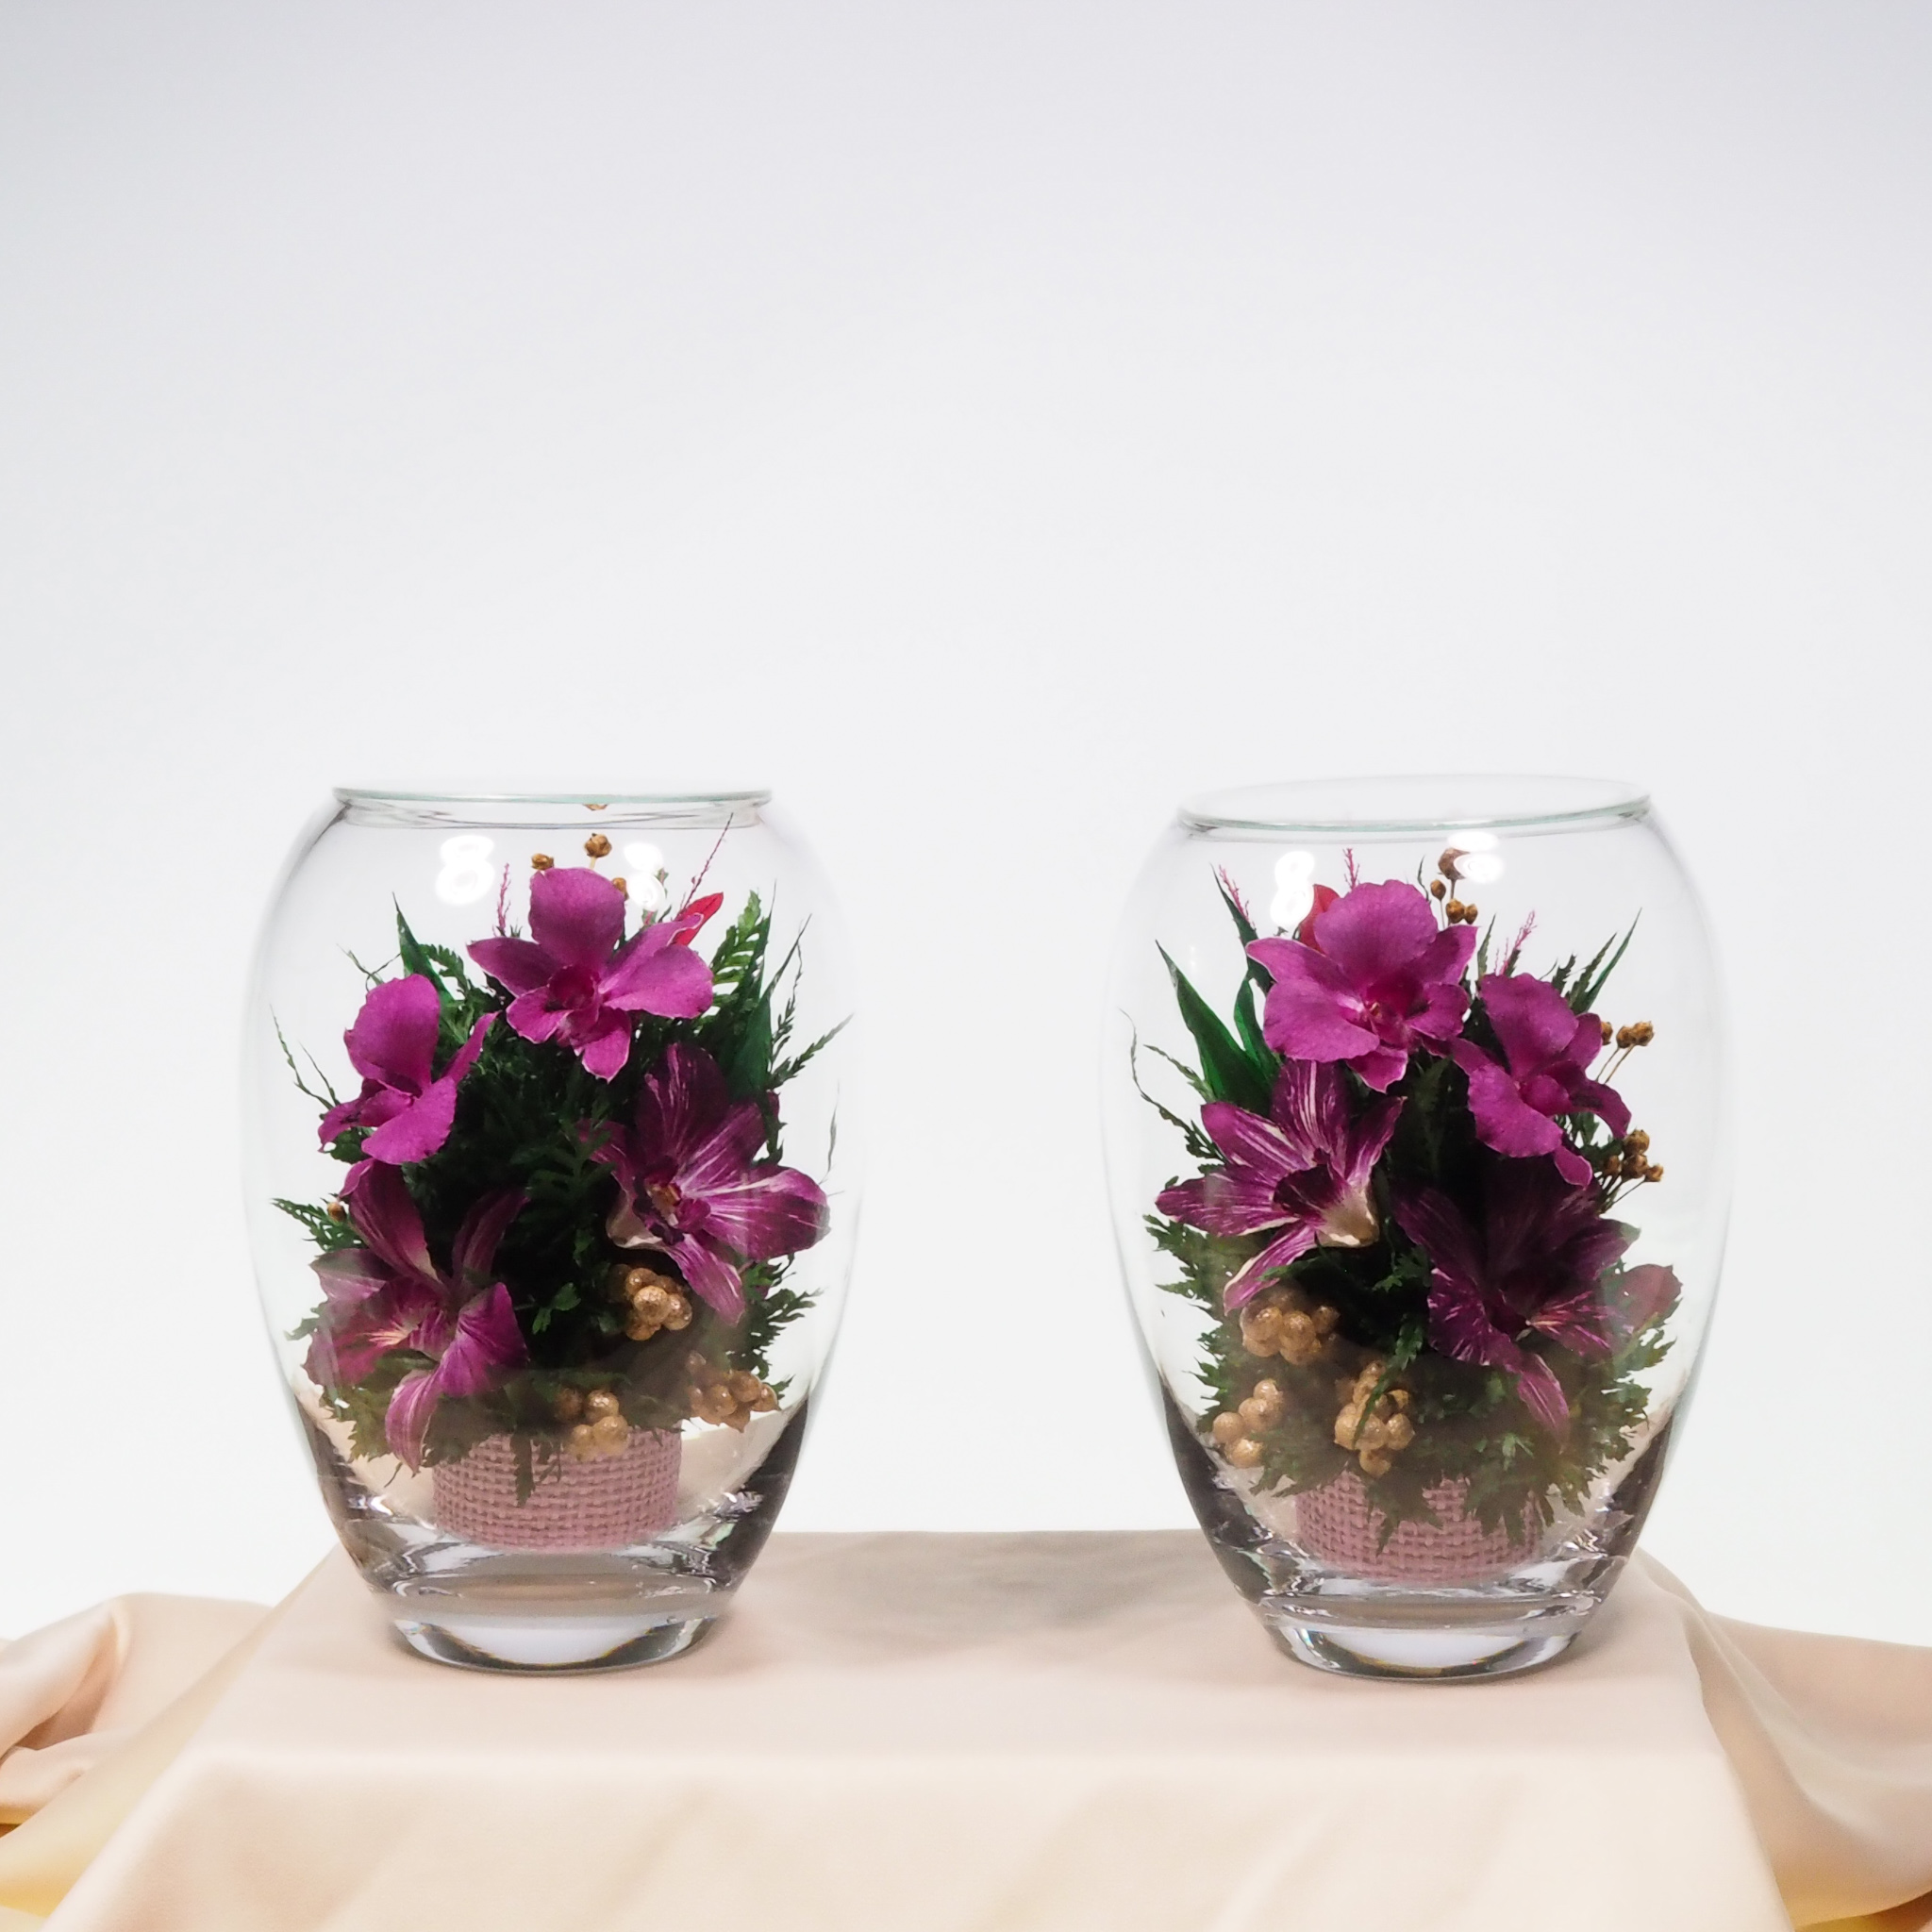 ชุดดอกไม้บูชาพระในโหลแก้วโดย Fi’ora Thailand (2 ชิ้นต่อชุด) (ไหเล็ก, orcids, Worship Collection). ดอกไม้ธรรมชาติ 100% อยู่ได้ถึง 5 ปี.